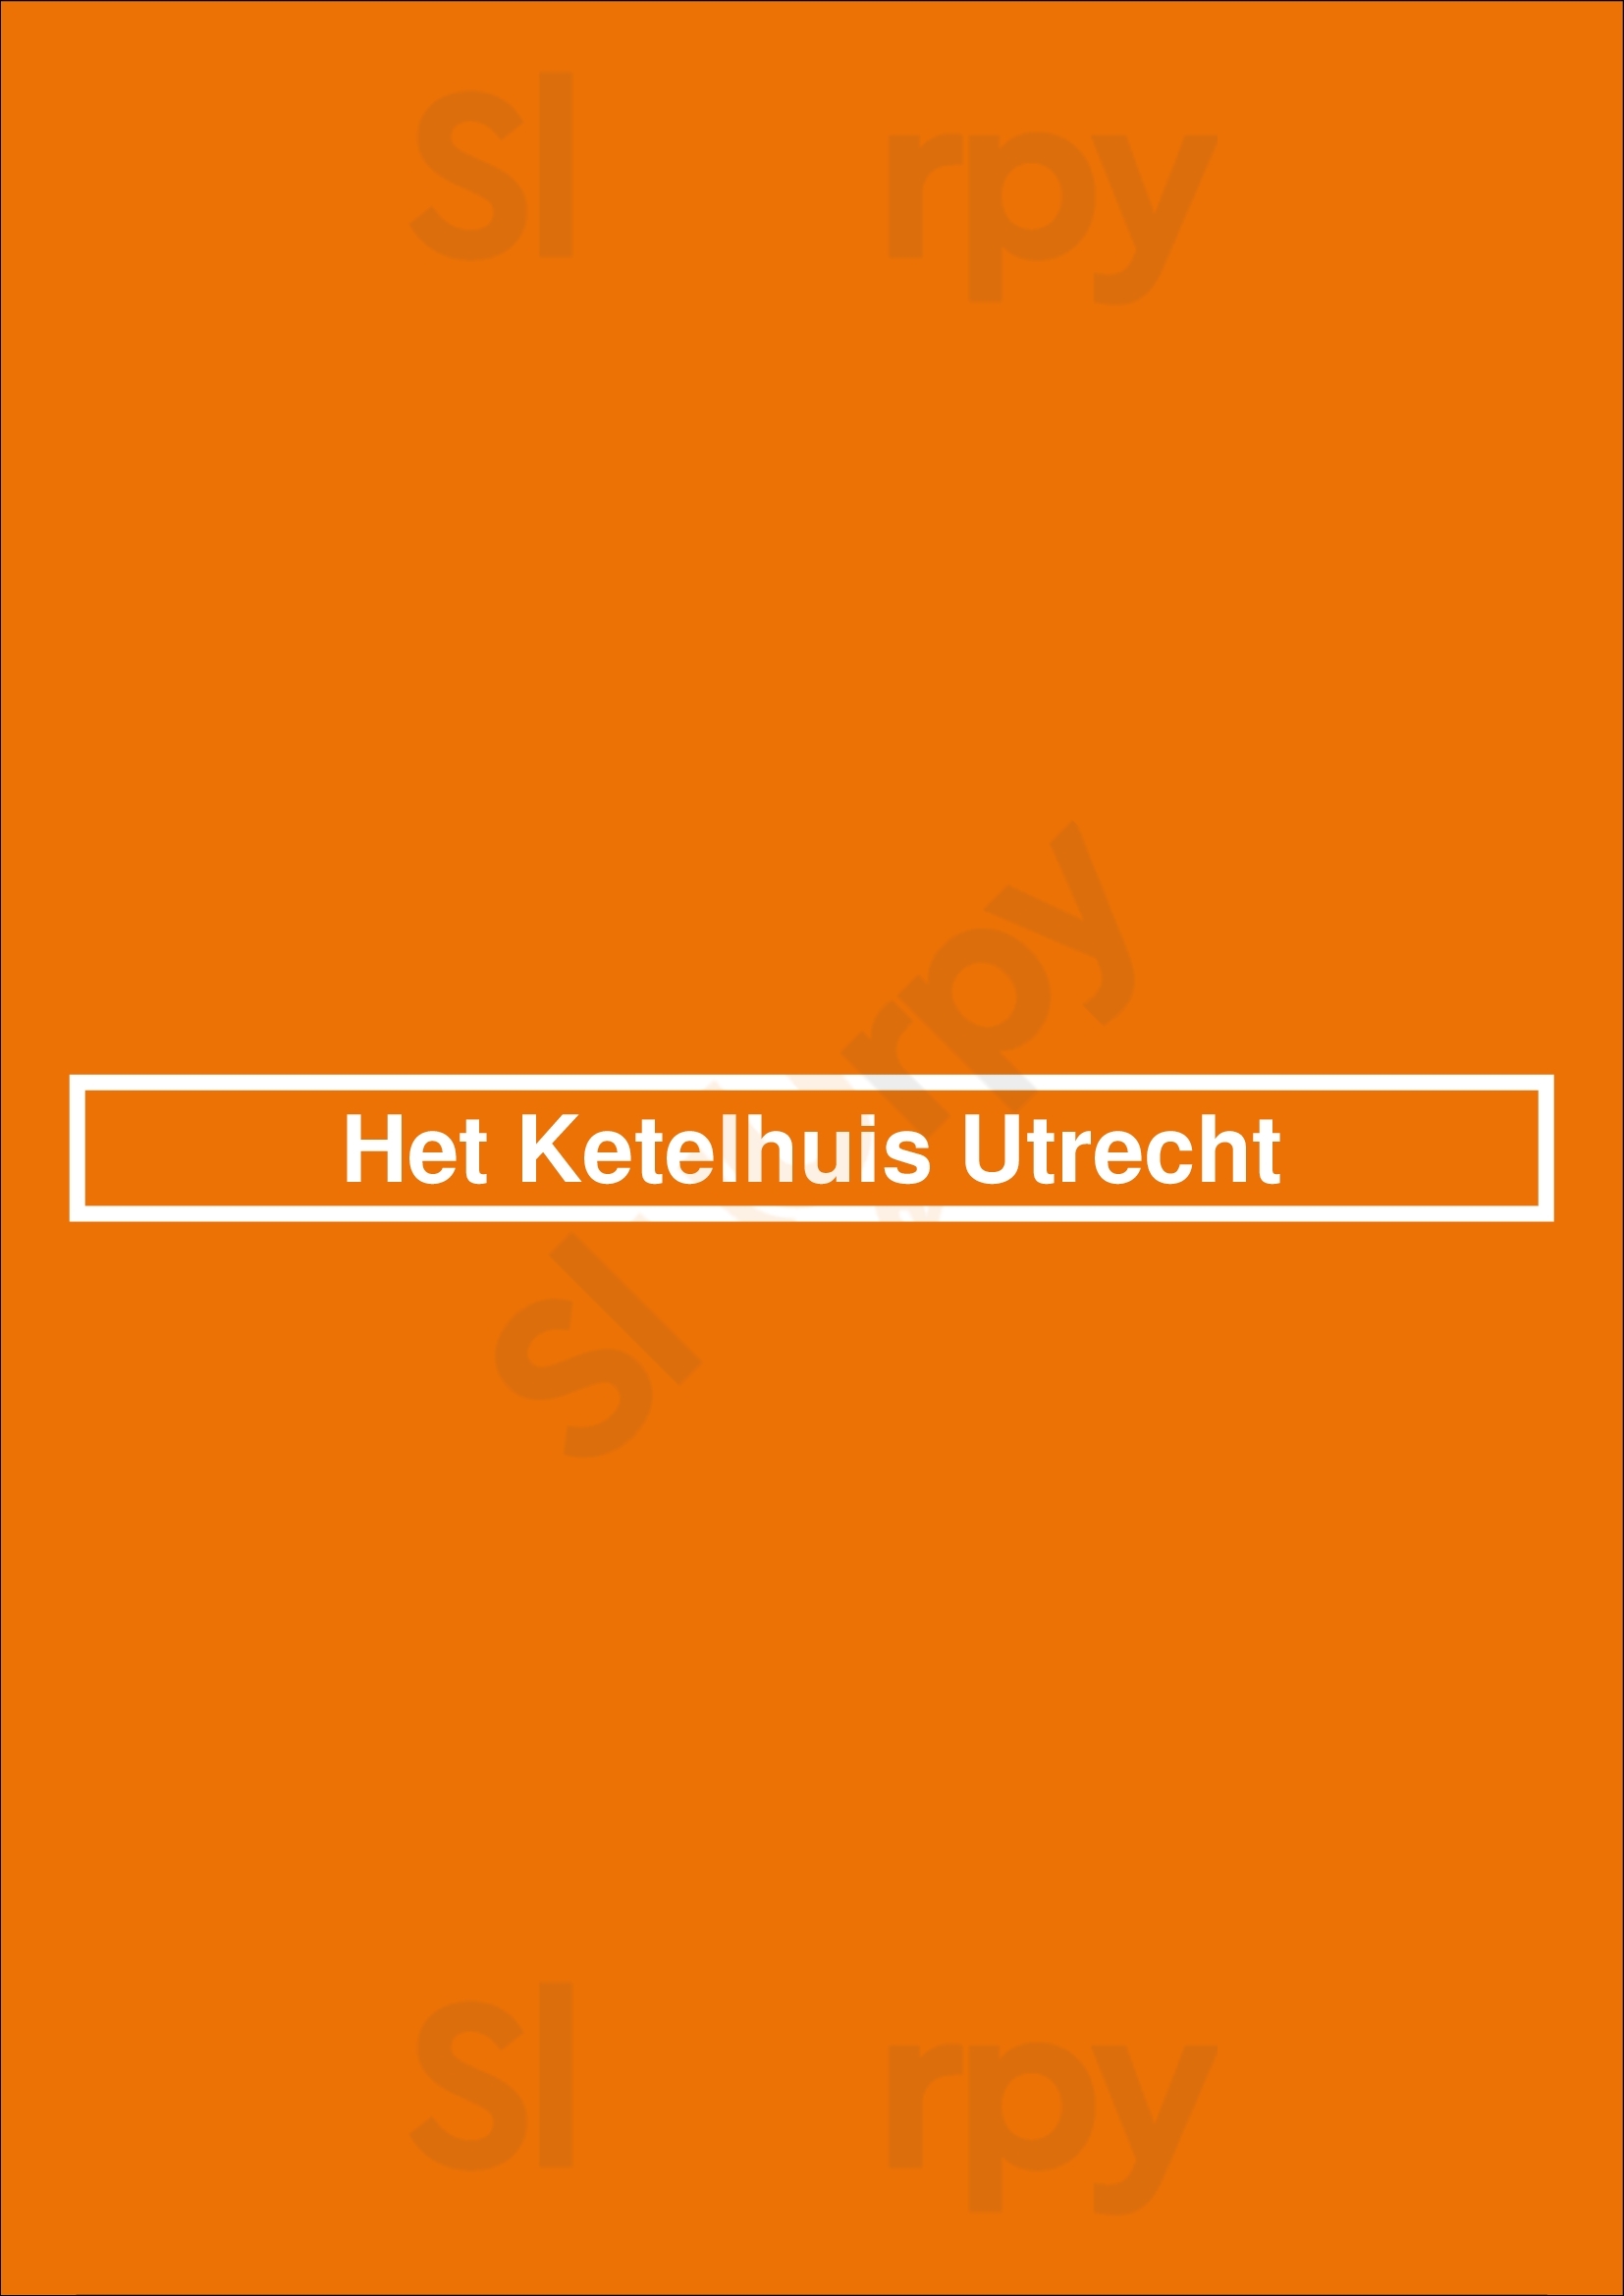 Het Ketelhuis Utrecht Utrecht Menu - 1